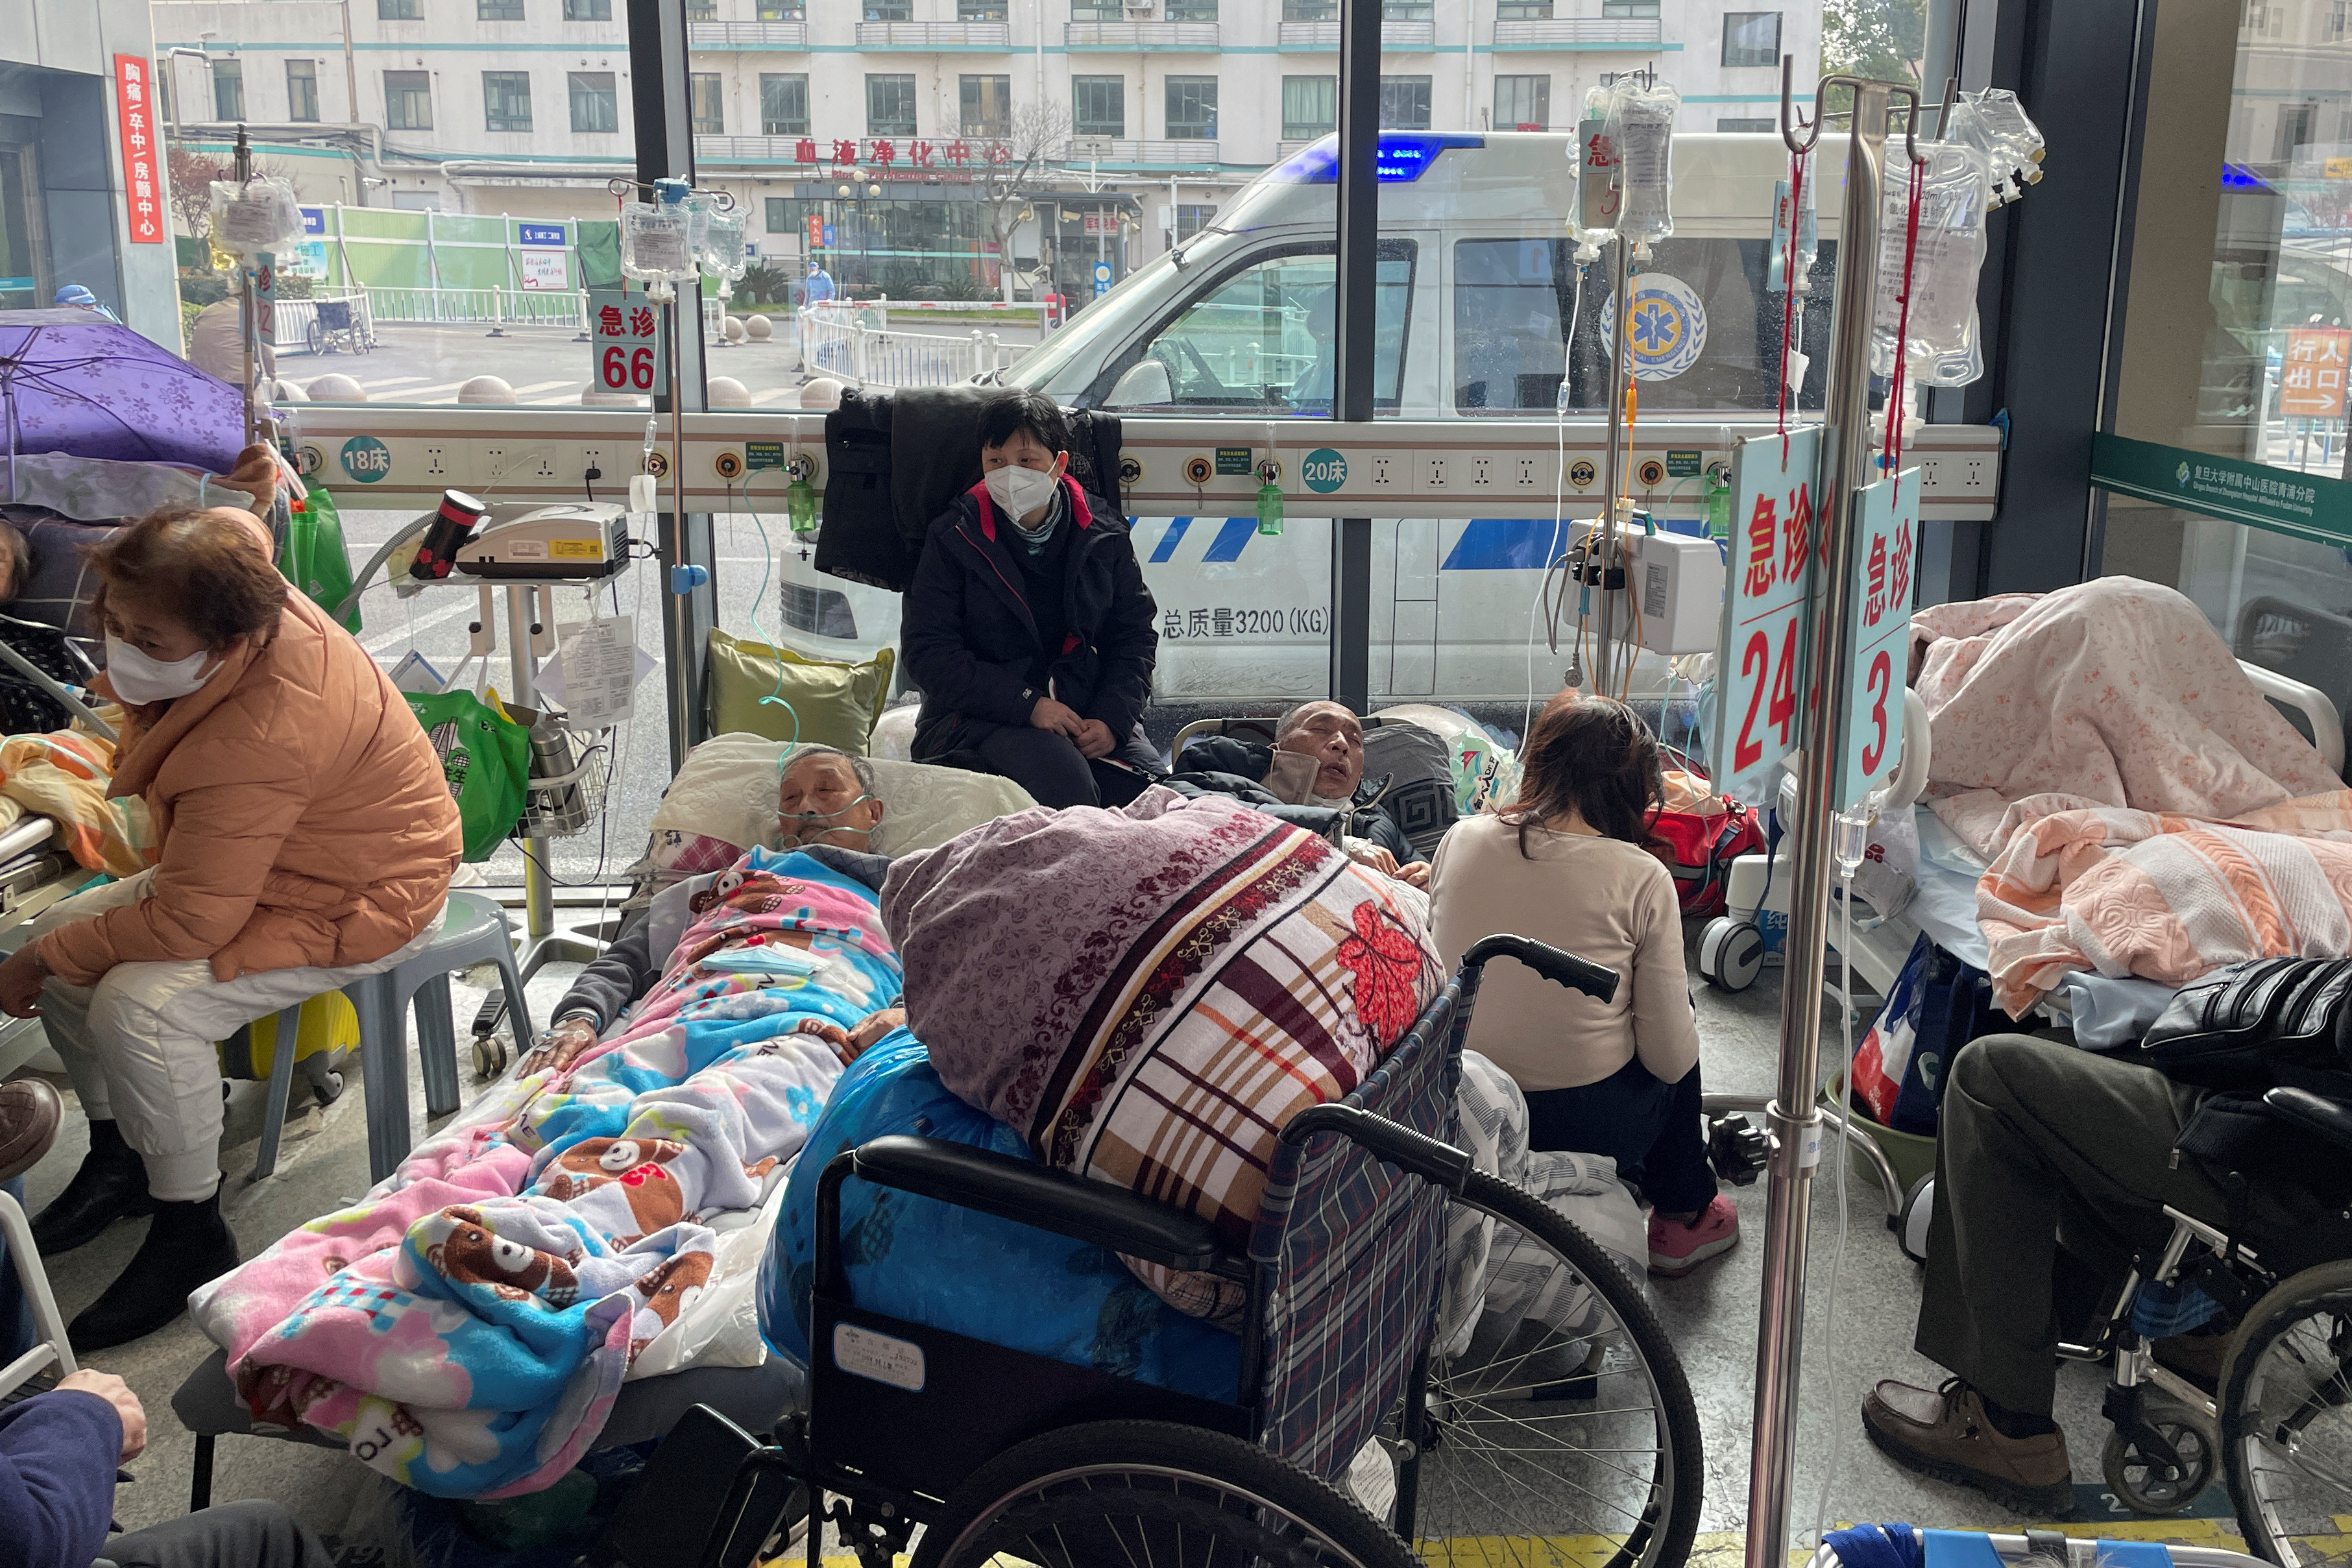 Pacientes yacen en camas en el departamento de emergencias de un hospital, en medio del brote de la enfermedad por coronavirus (COVID-19) en China